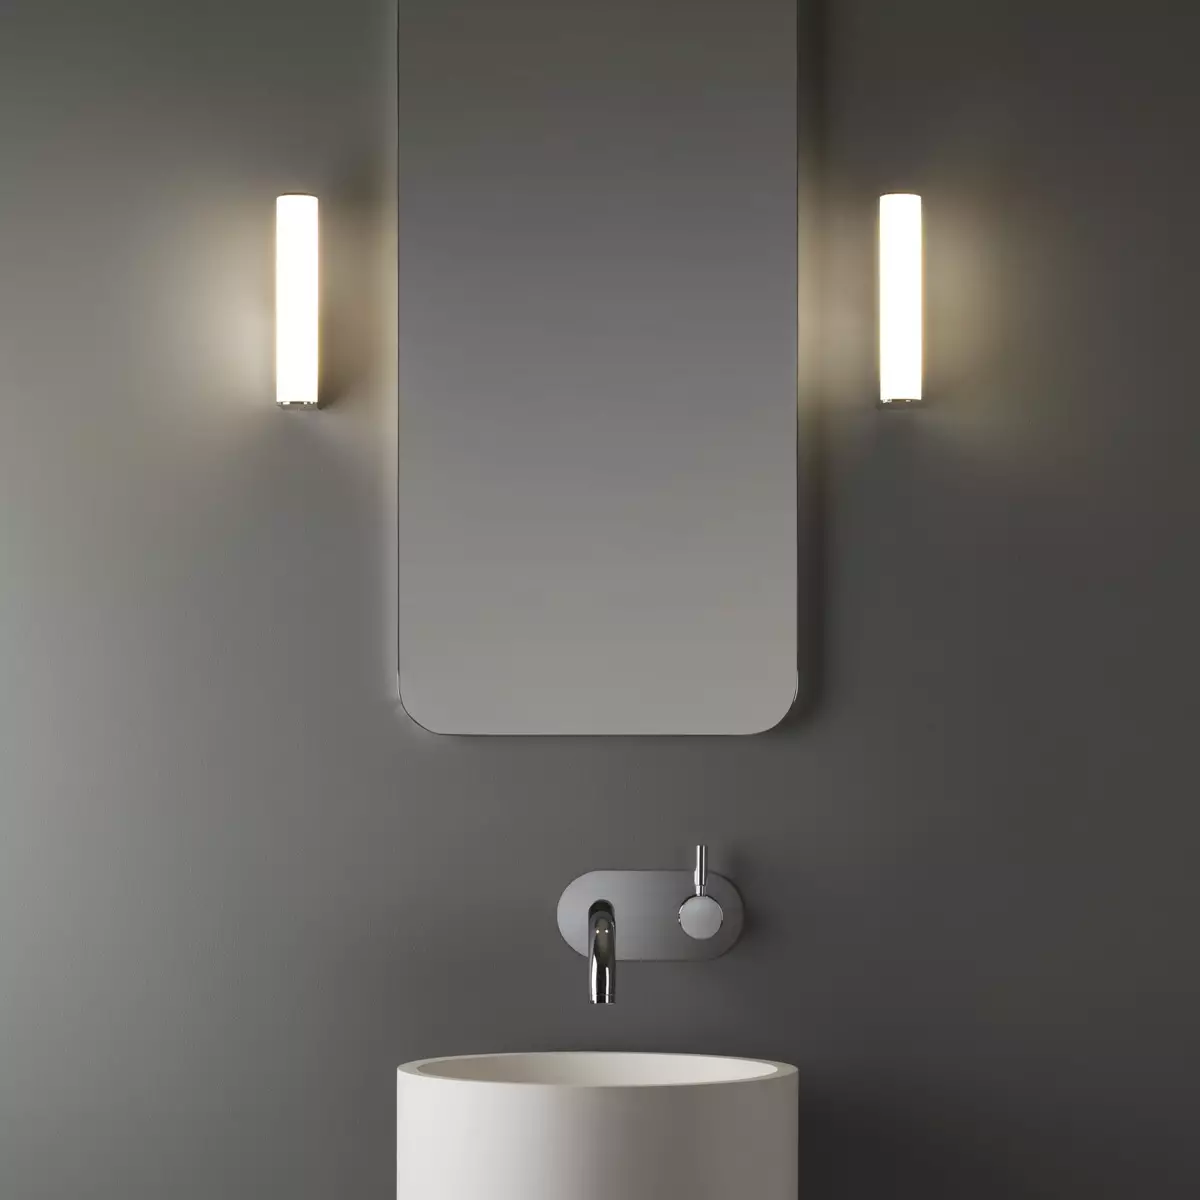 ရေချိုးခန်းအတွက်နံရံမီးခွက်များ - LED နှင့်အခြားအစိုဓာတ်ကာကွယ်စောင့်ရှောက်ရေးမီးအိမ်နံရံပေါ်ရှိအခြားအစိုဓာတ်ကာကွယ်စောင့်ရှောက်မှုမီးခွက်များ။ အစိုဓာတ်ကို - အထောက်အထားမီးခွက်များ၏ကာကွယ်စောင့်ရှောက်၏ဒီဂရီ 10130_30